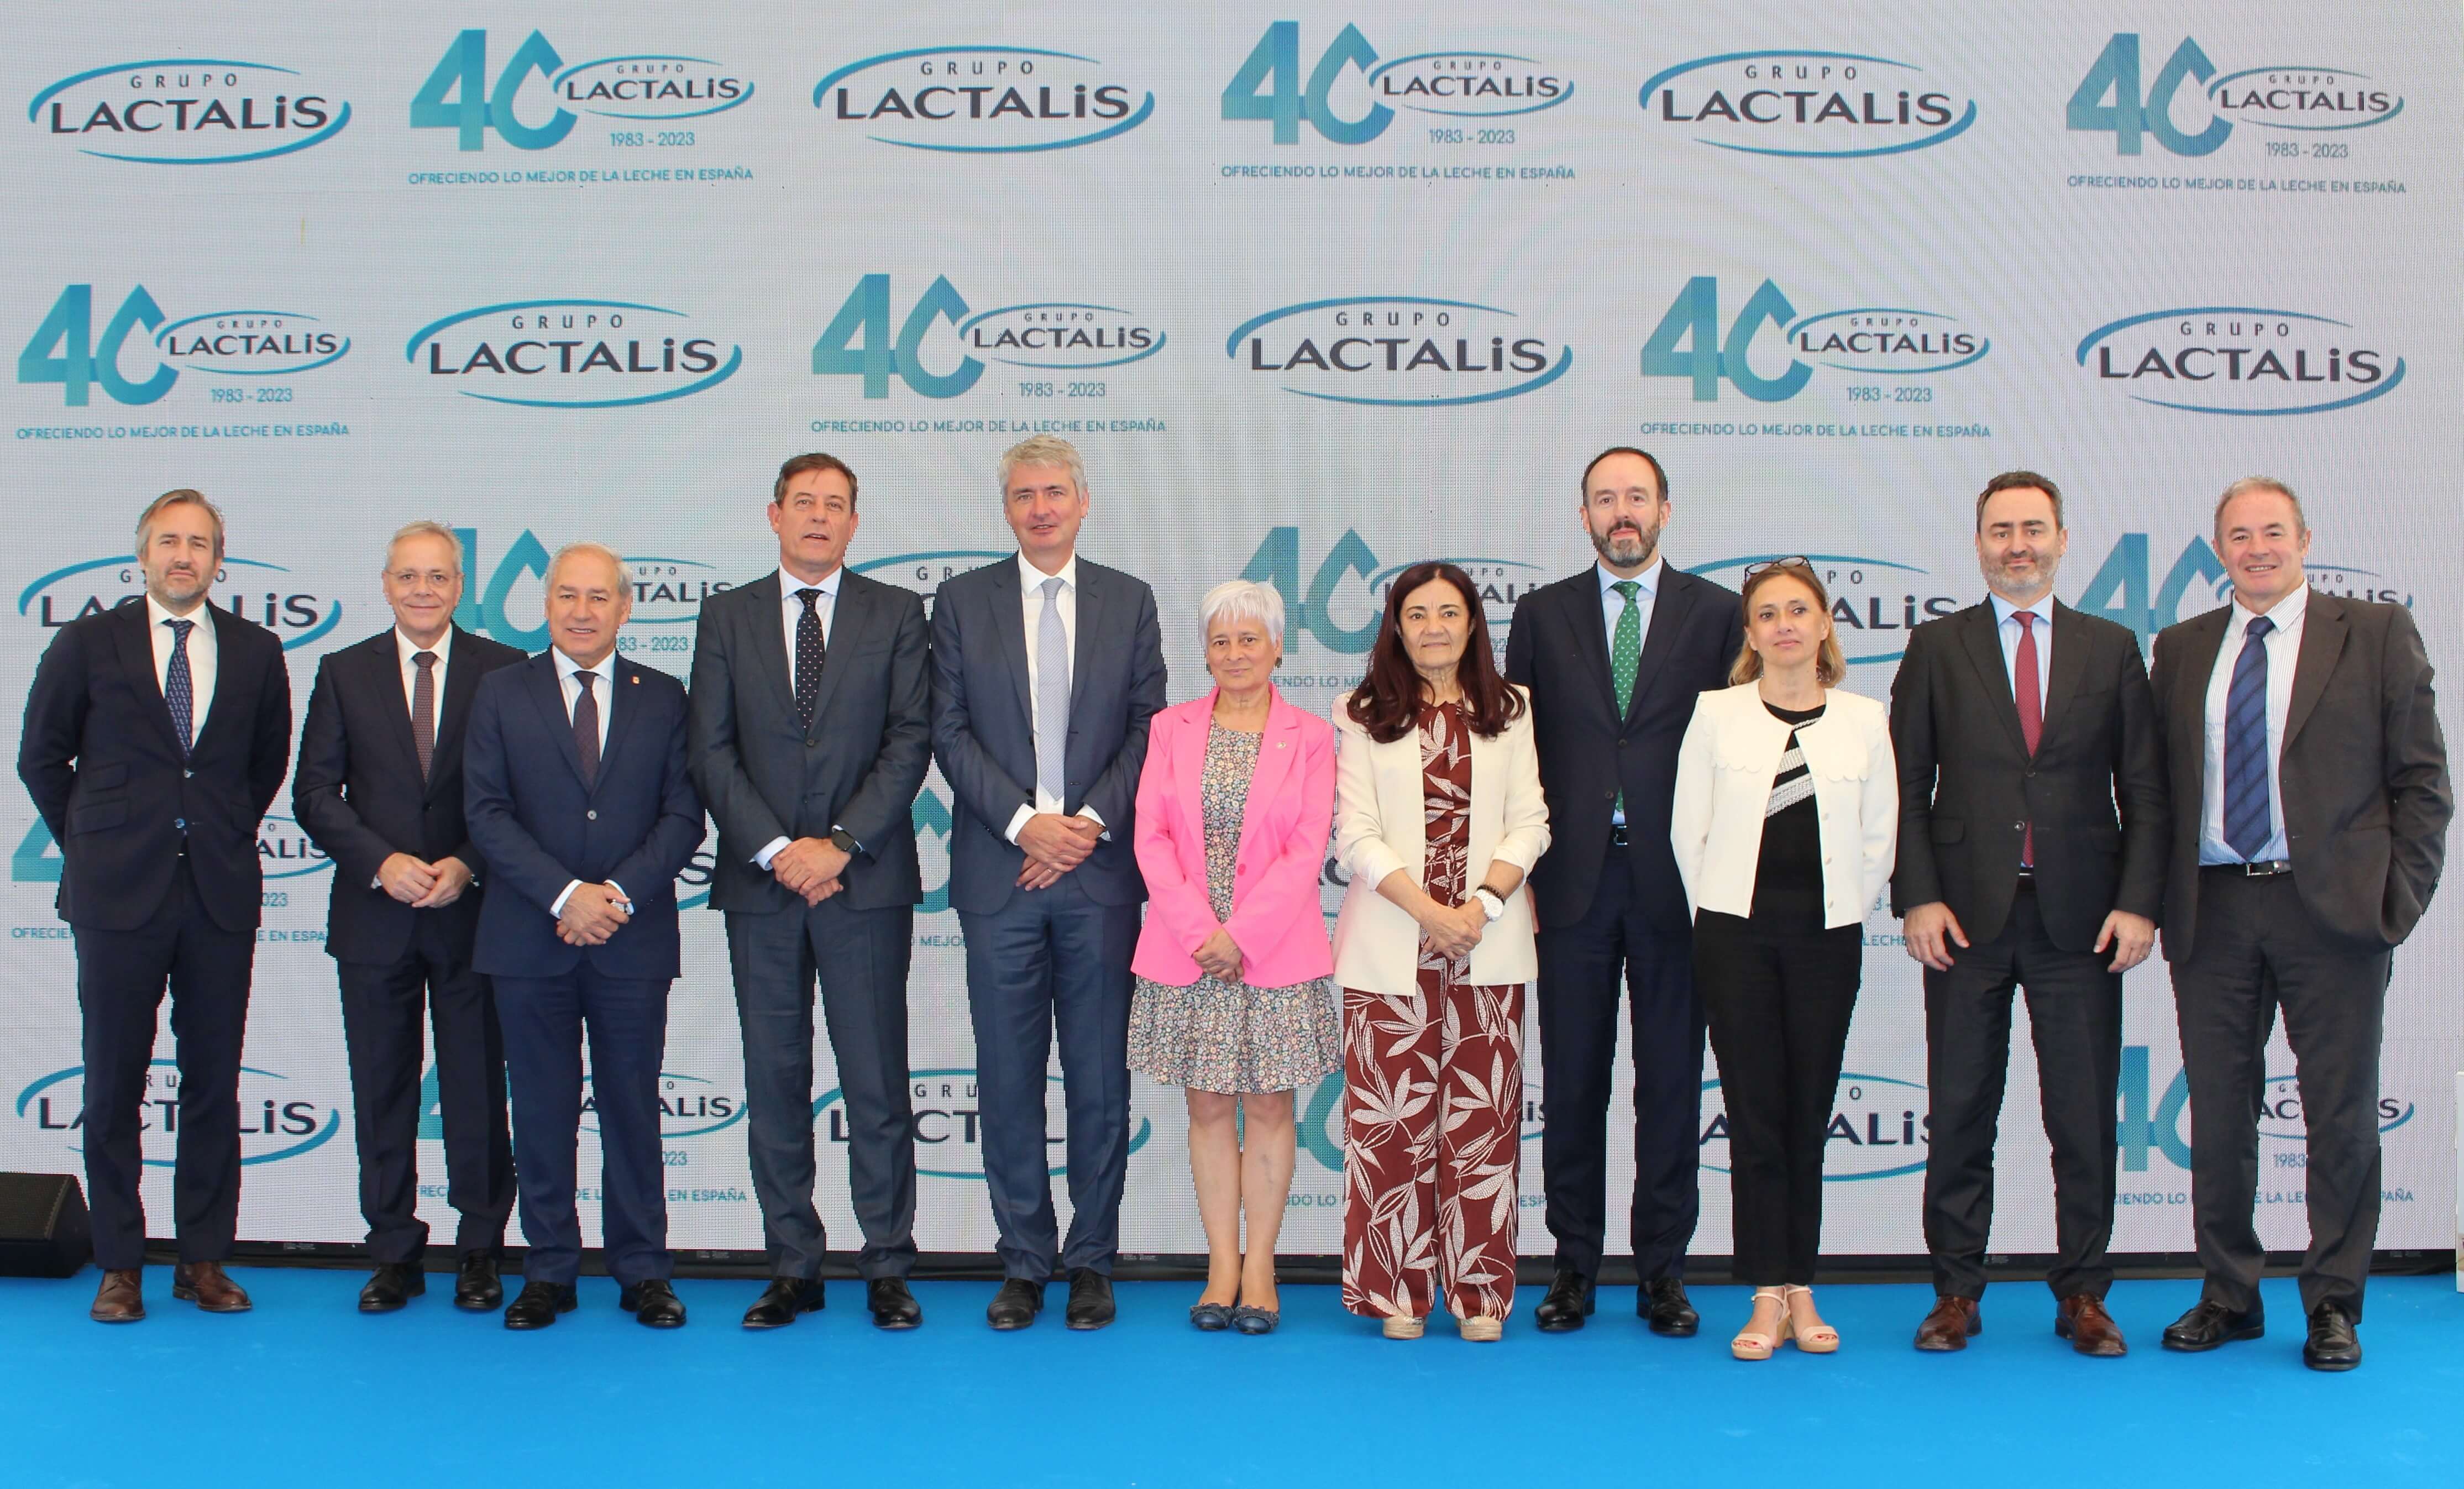 Grupo Lactalis celebra sus 40 años en España reiterando su pasión por la leche y su compromiso con la innovación, la calidad, los territorios y las personas